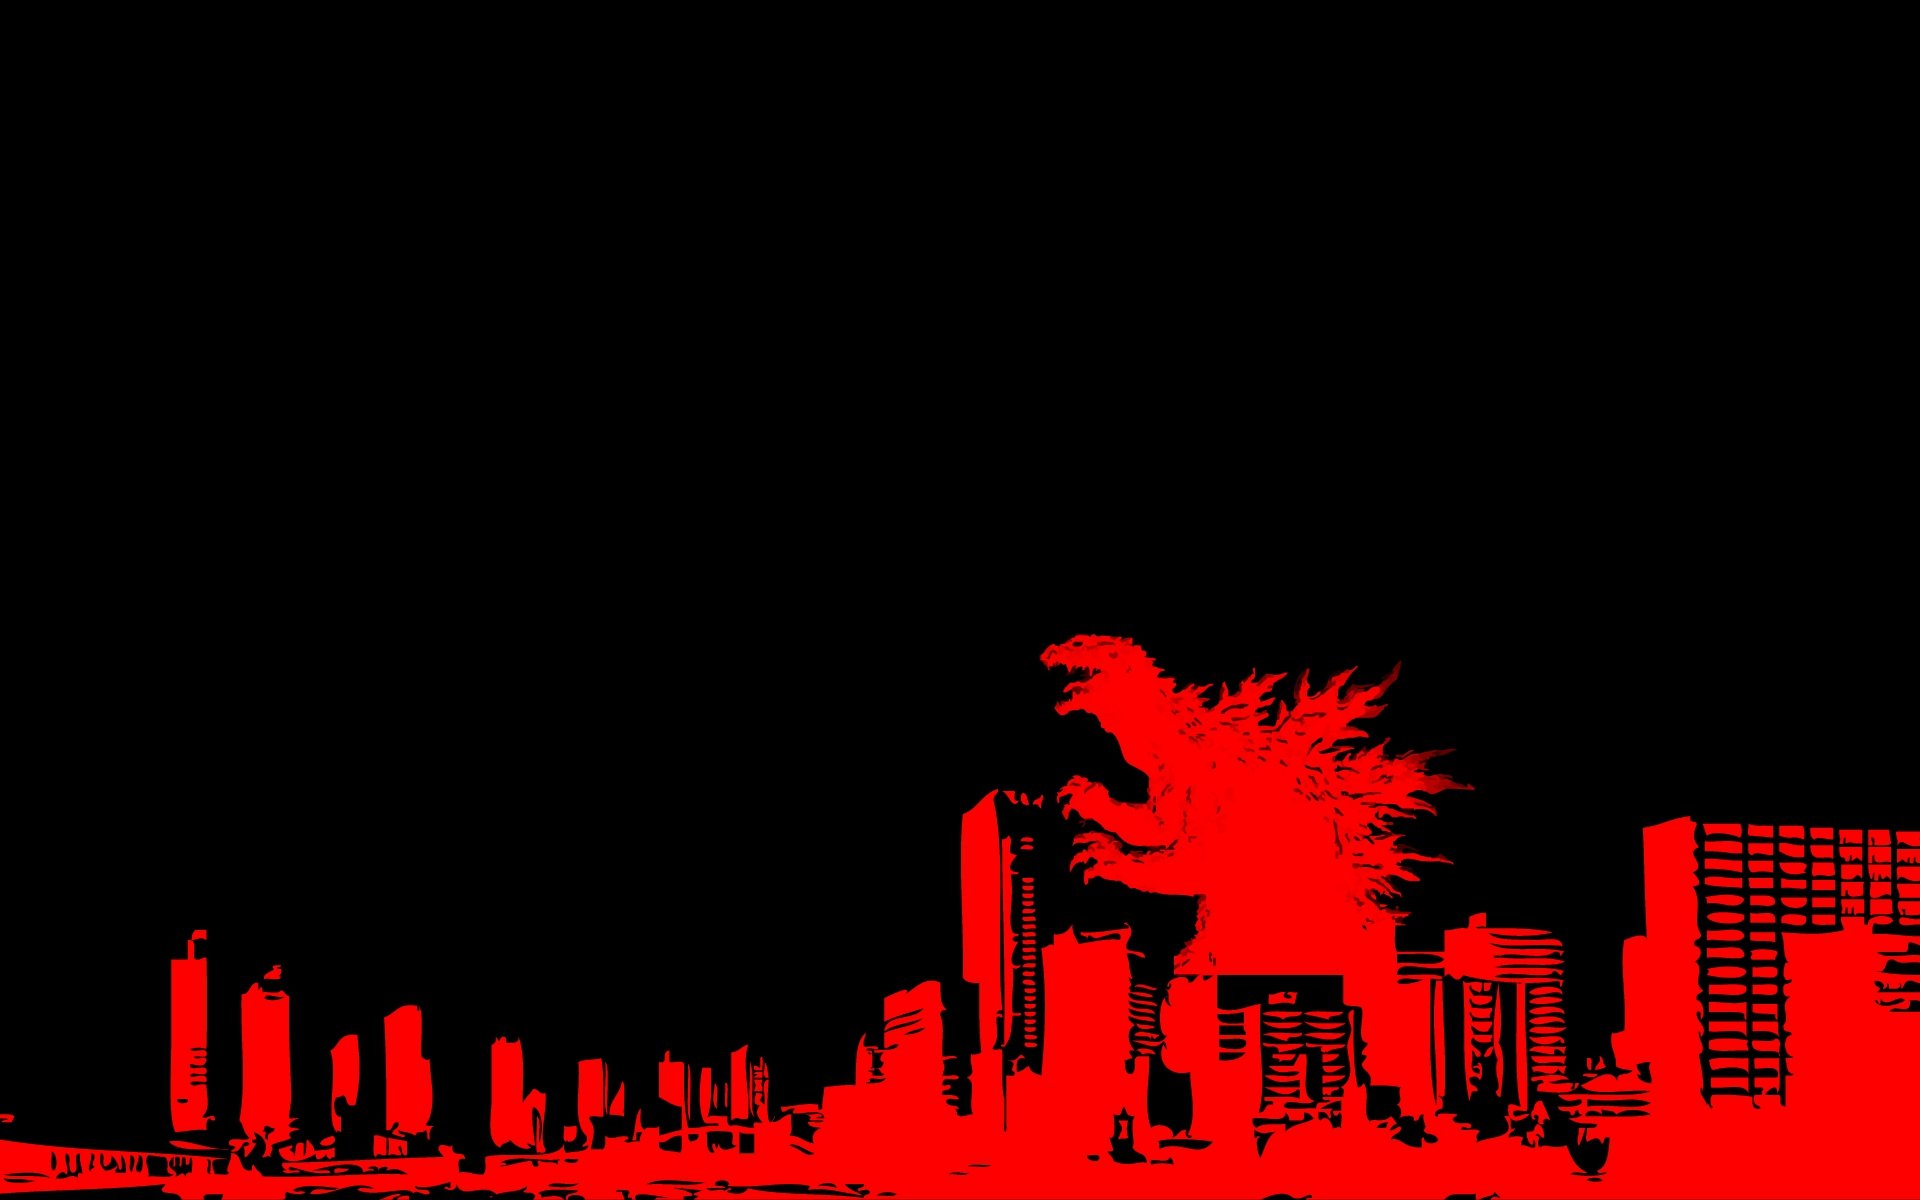 Godzilla HD Wallpaper | Background Image | 1920x1200 | ID ...